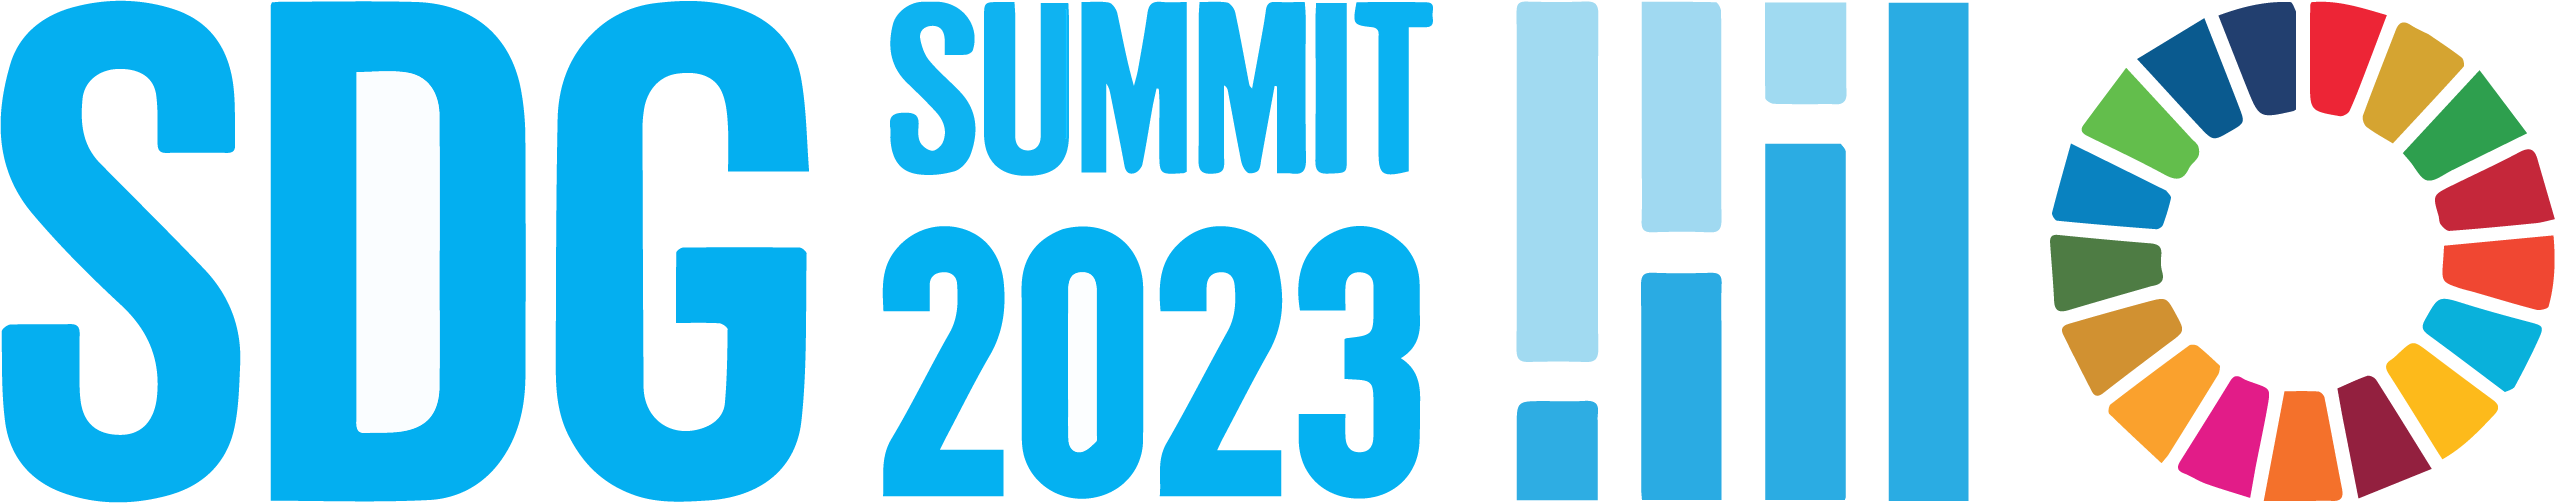 SDG Summit logo